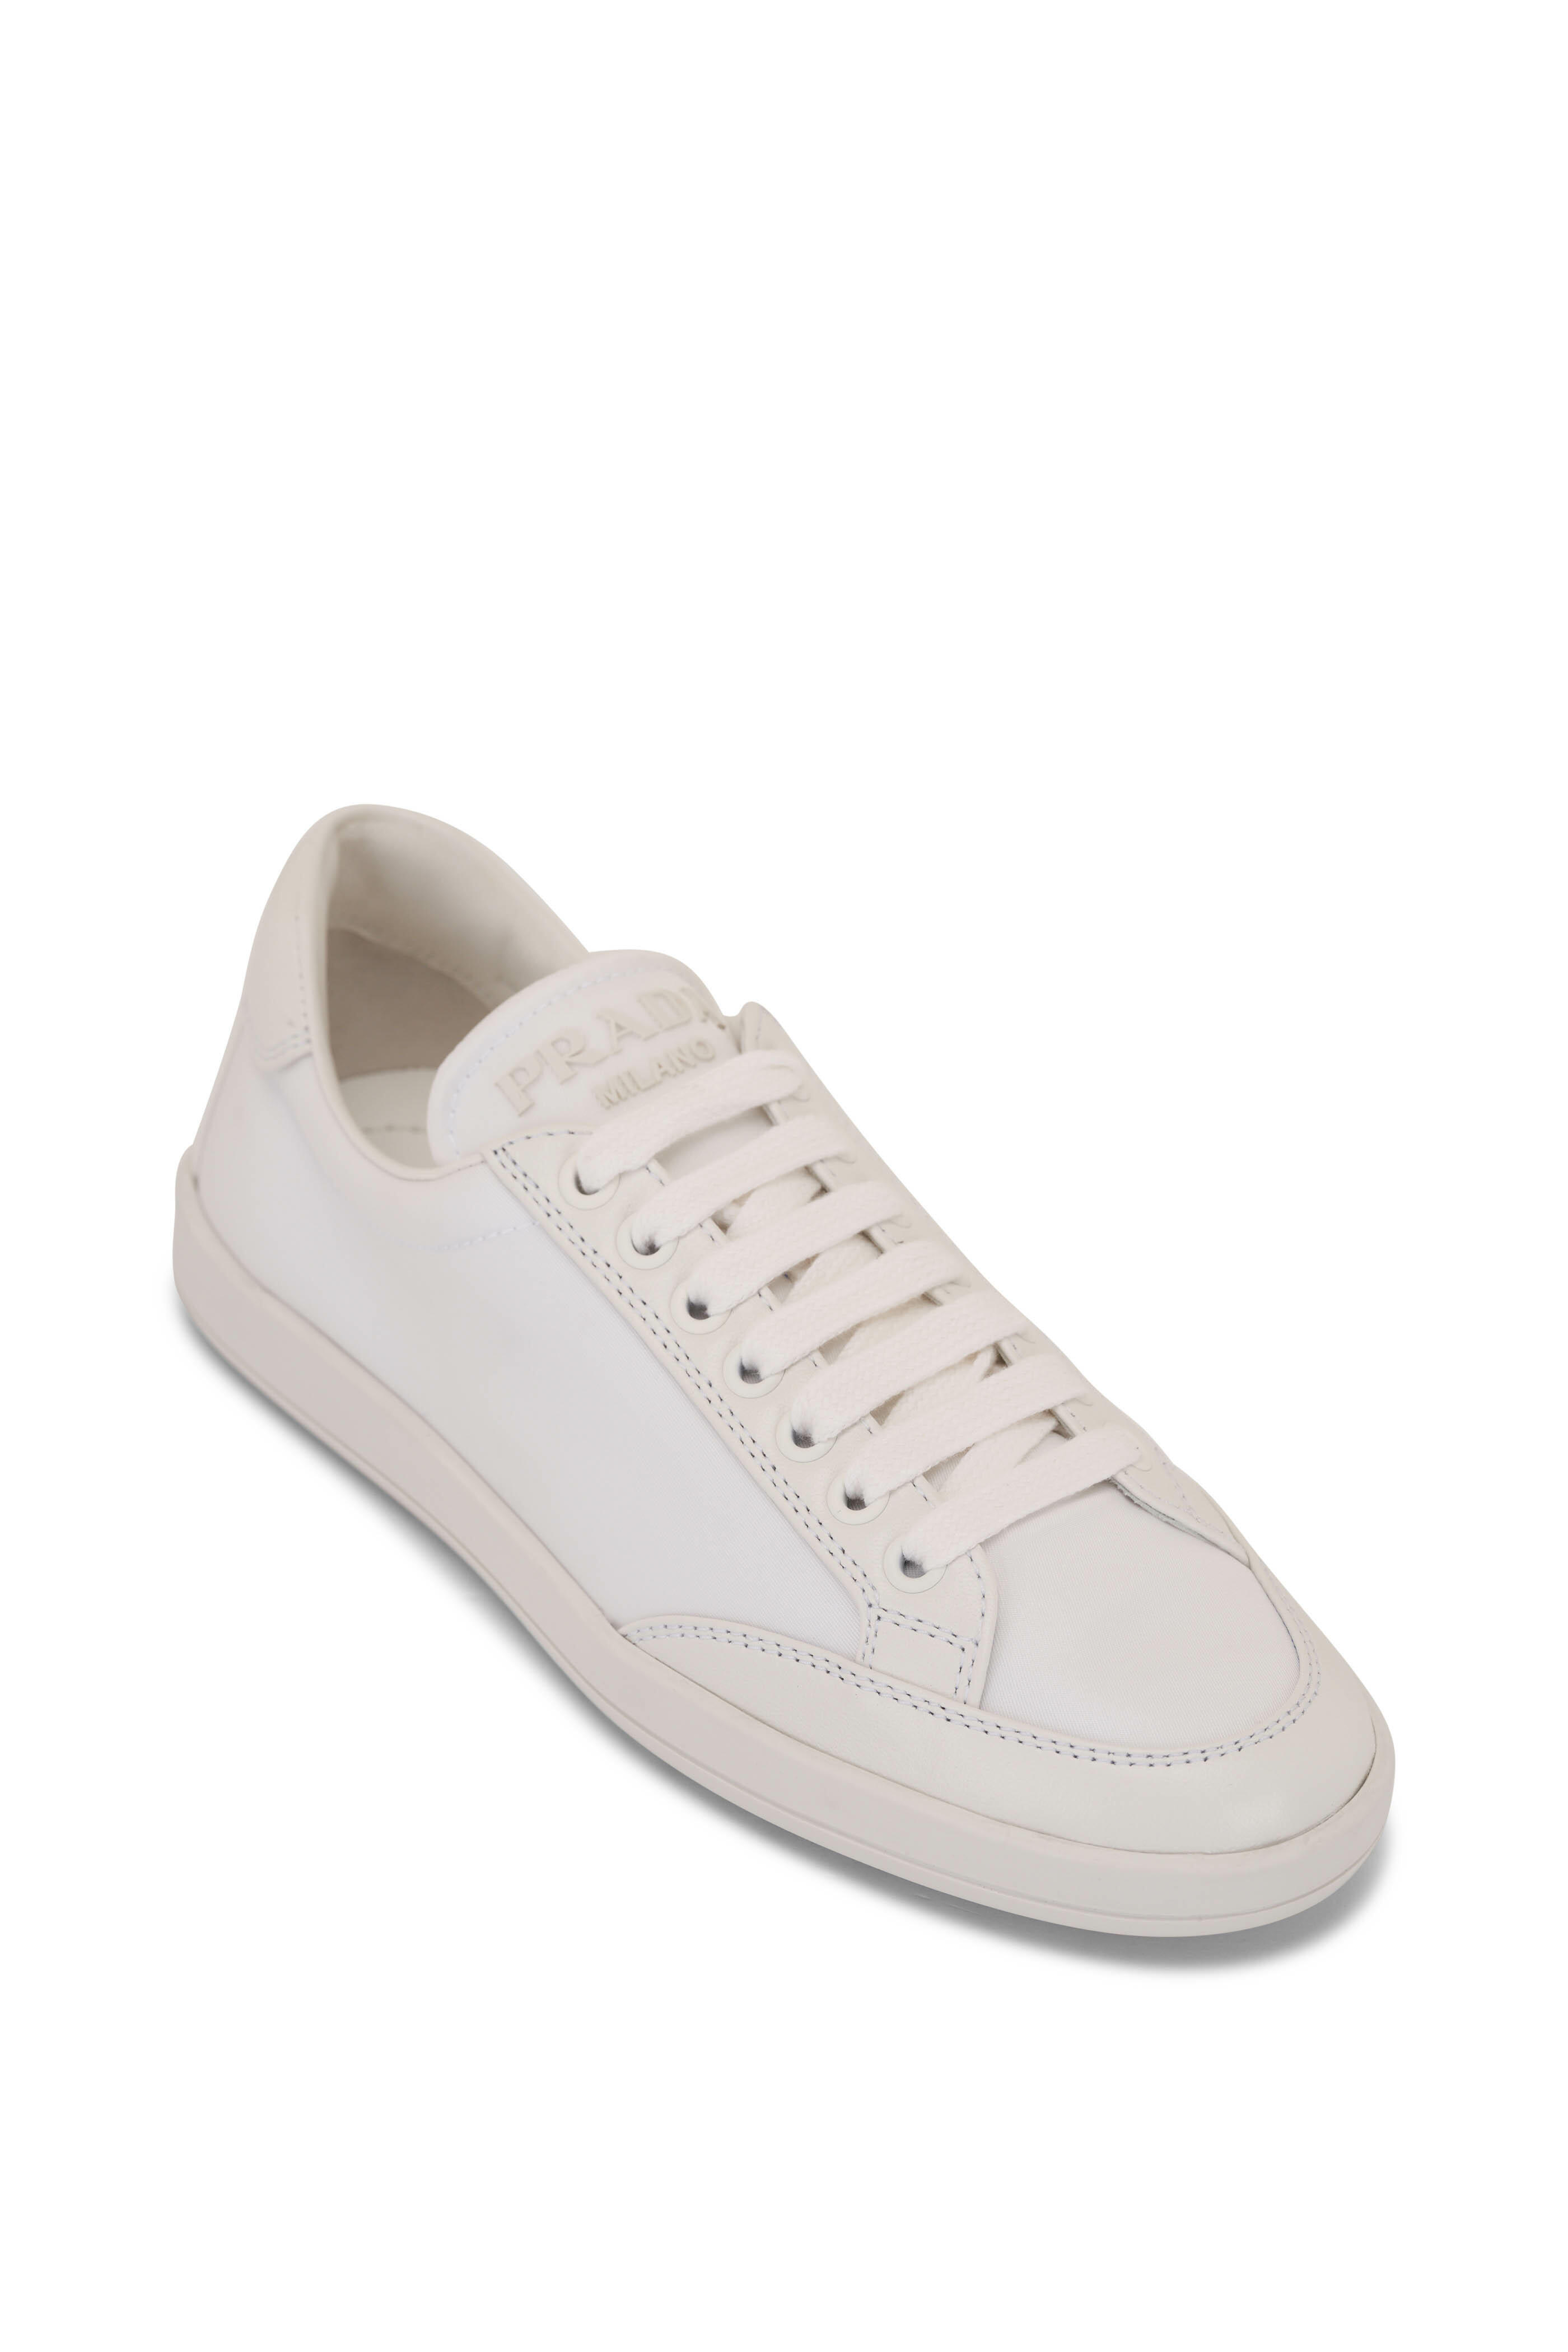 Prada - White Nylon & Leather Sneaker | Mitchell Stores